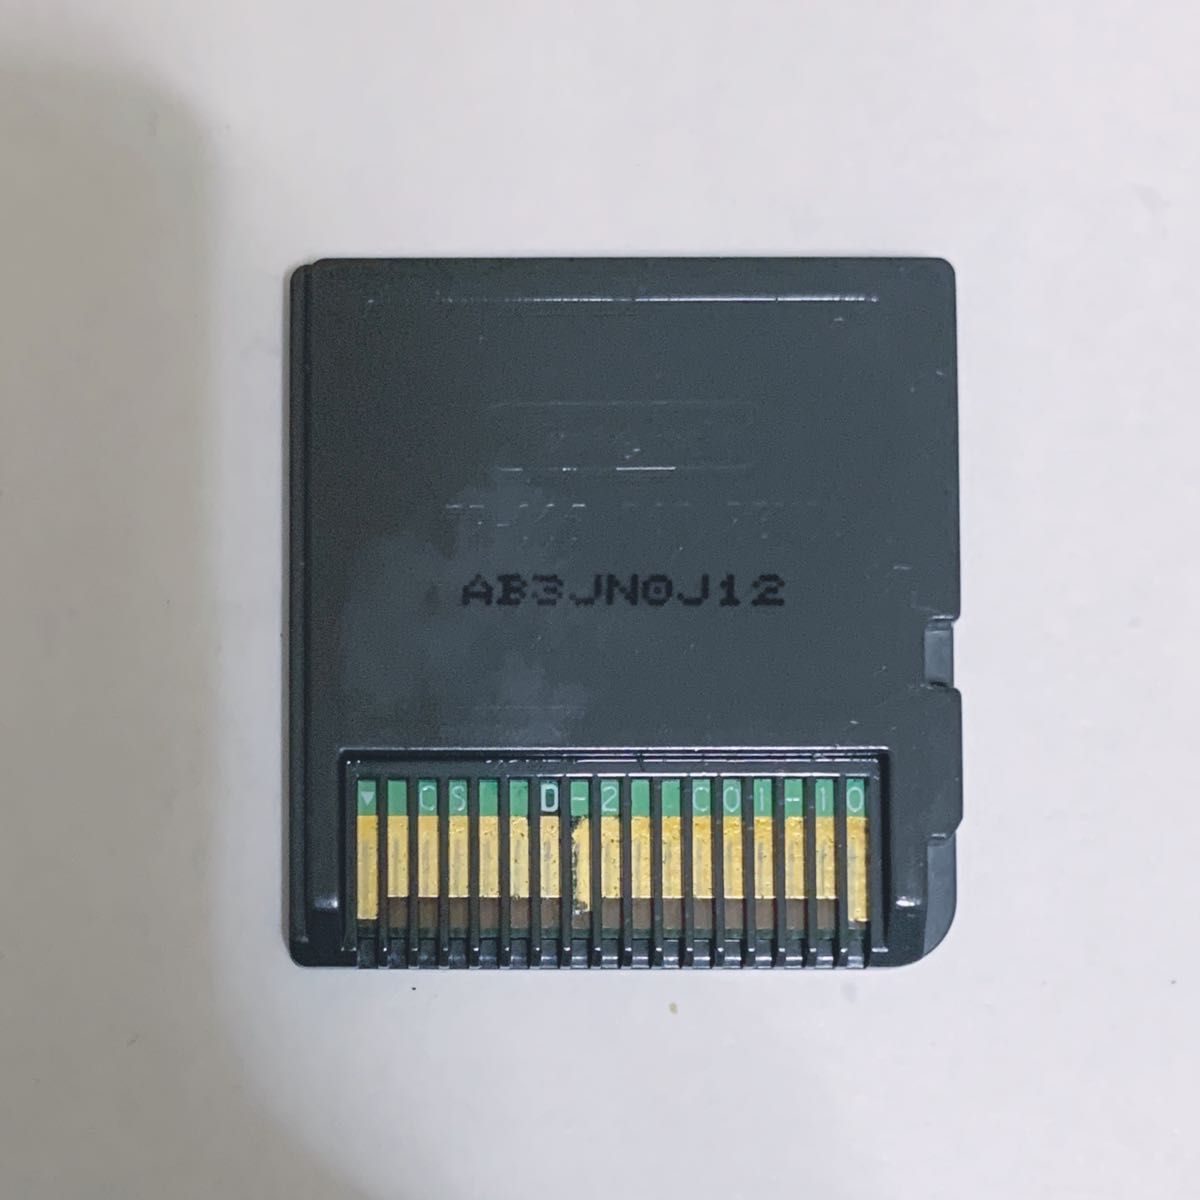 マリオバスケ 3 on 3 スリーオンスリー DS ソフト カセット